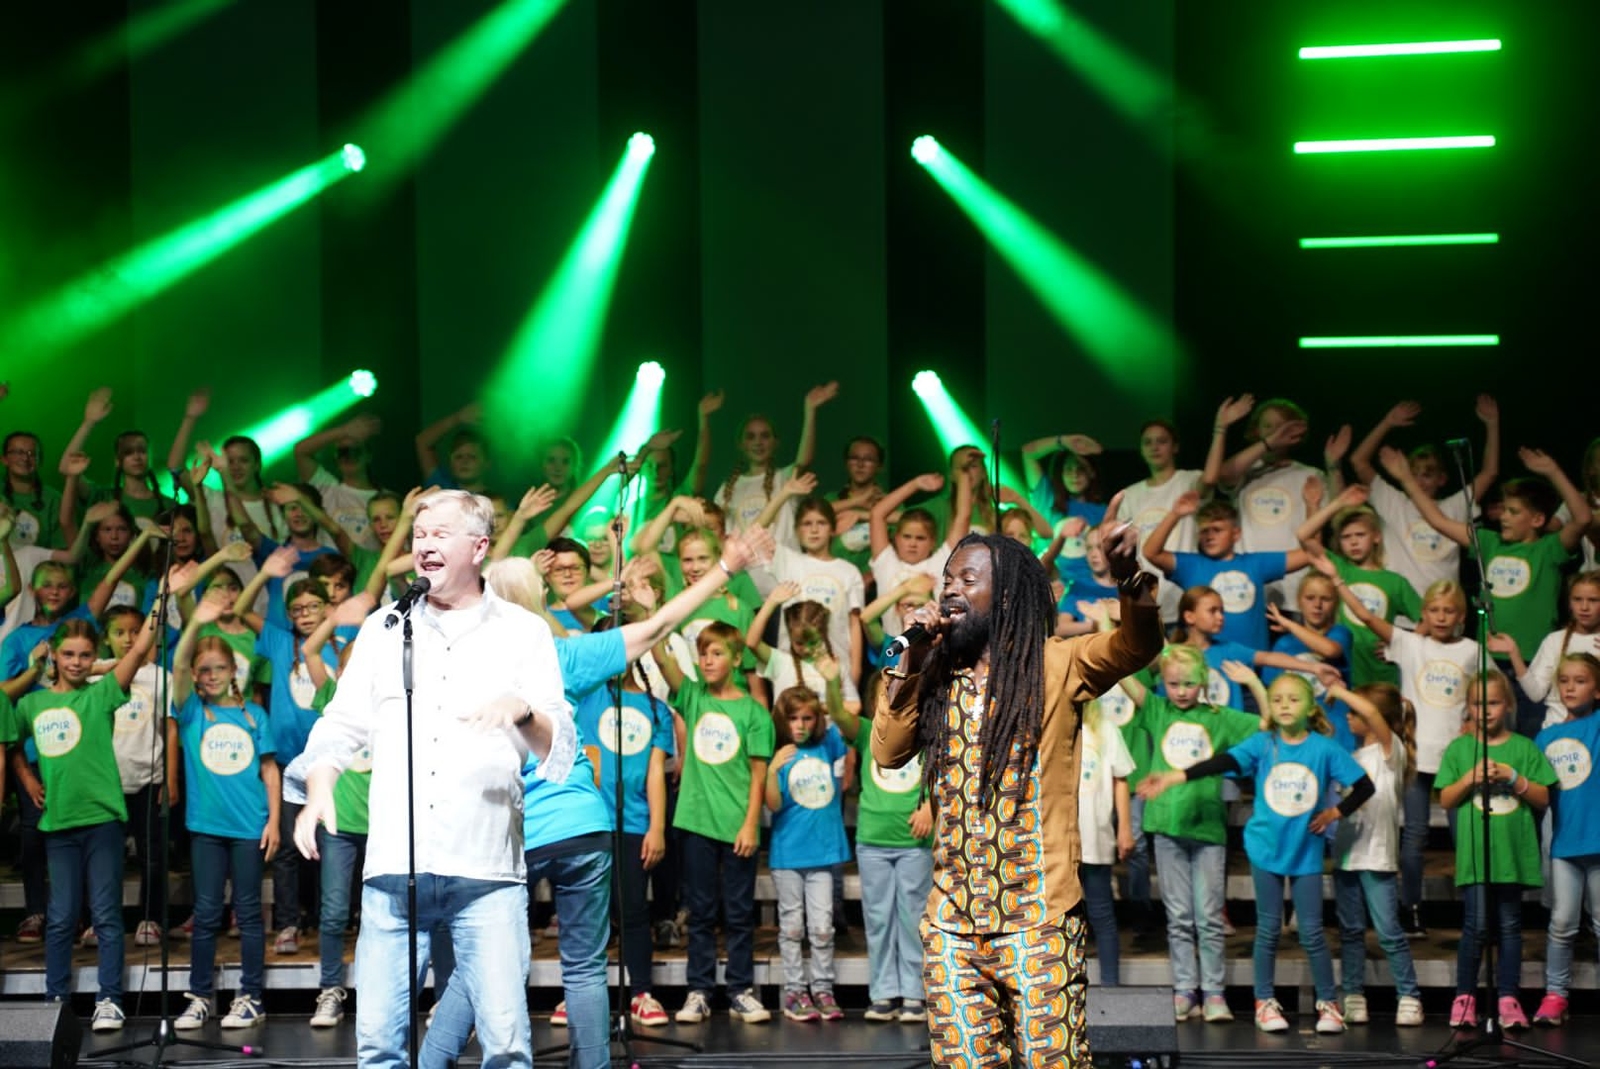 2022, earth choir kids, the green way of hope, reinhard horn, musik chor